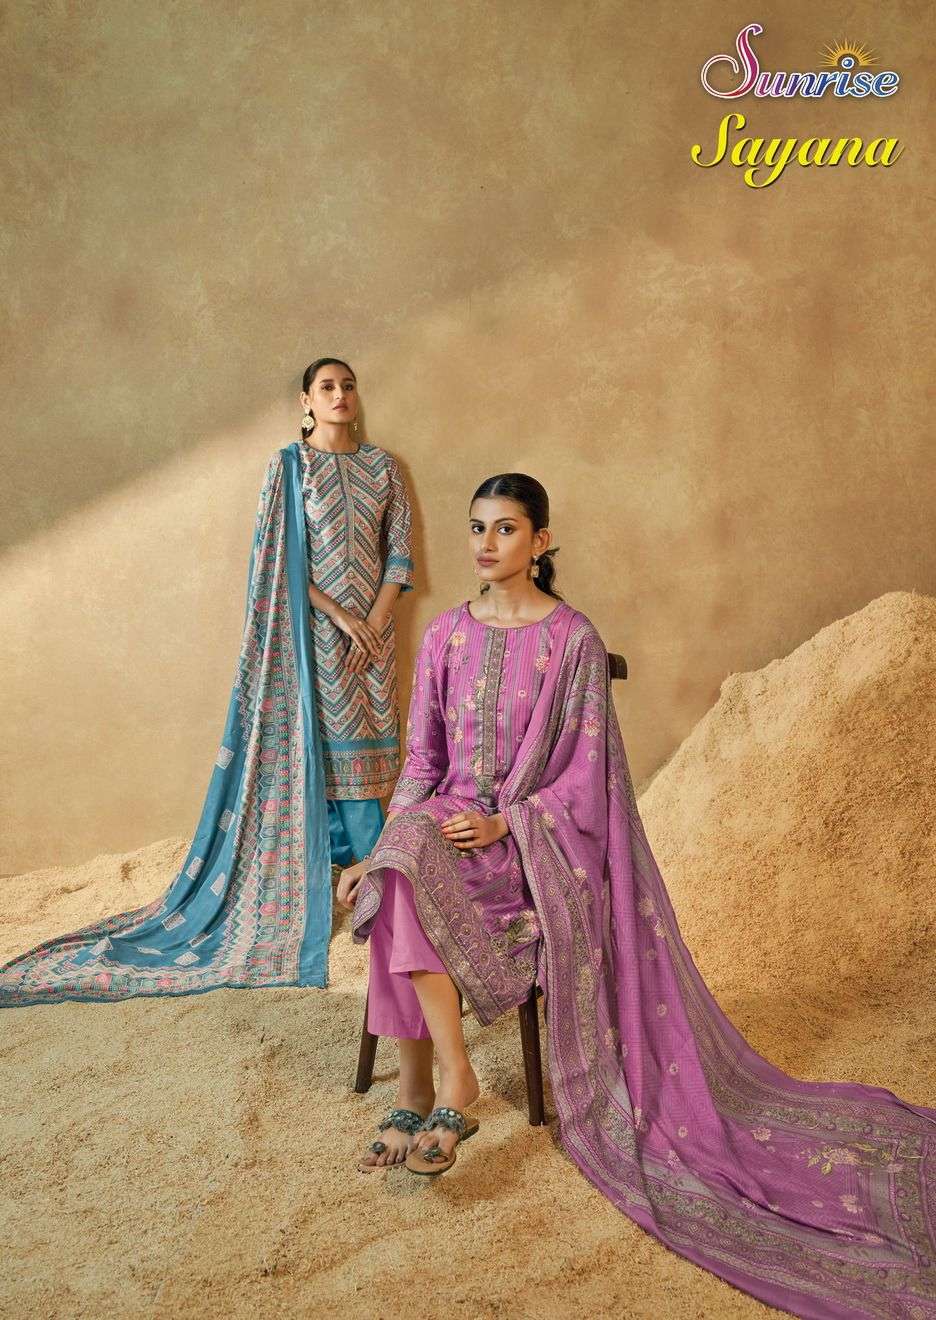 Sunjyoti Sayana Muslin Silk Salwar Suit Catalog Wholesale price